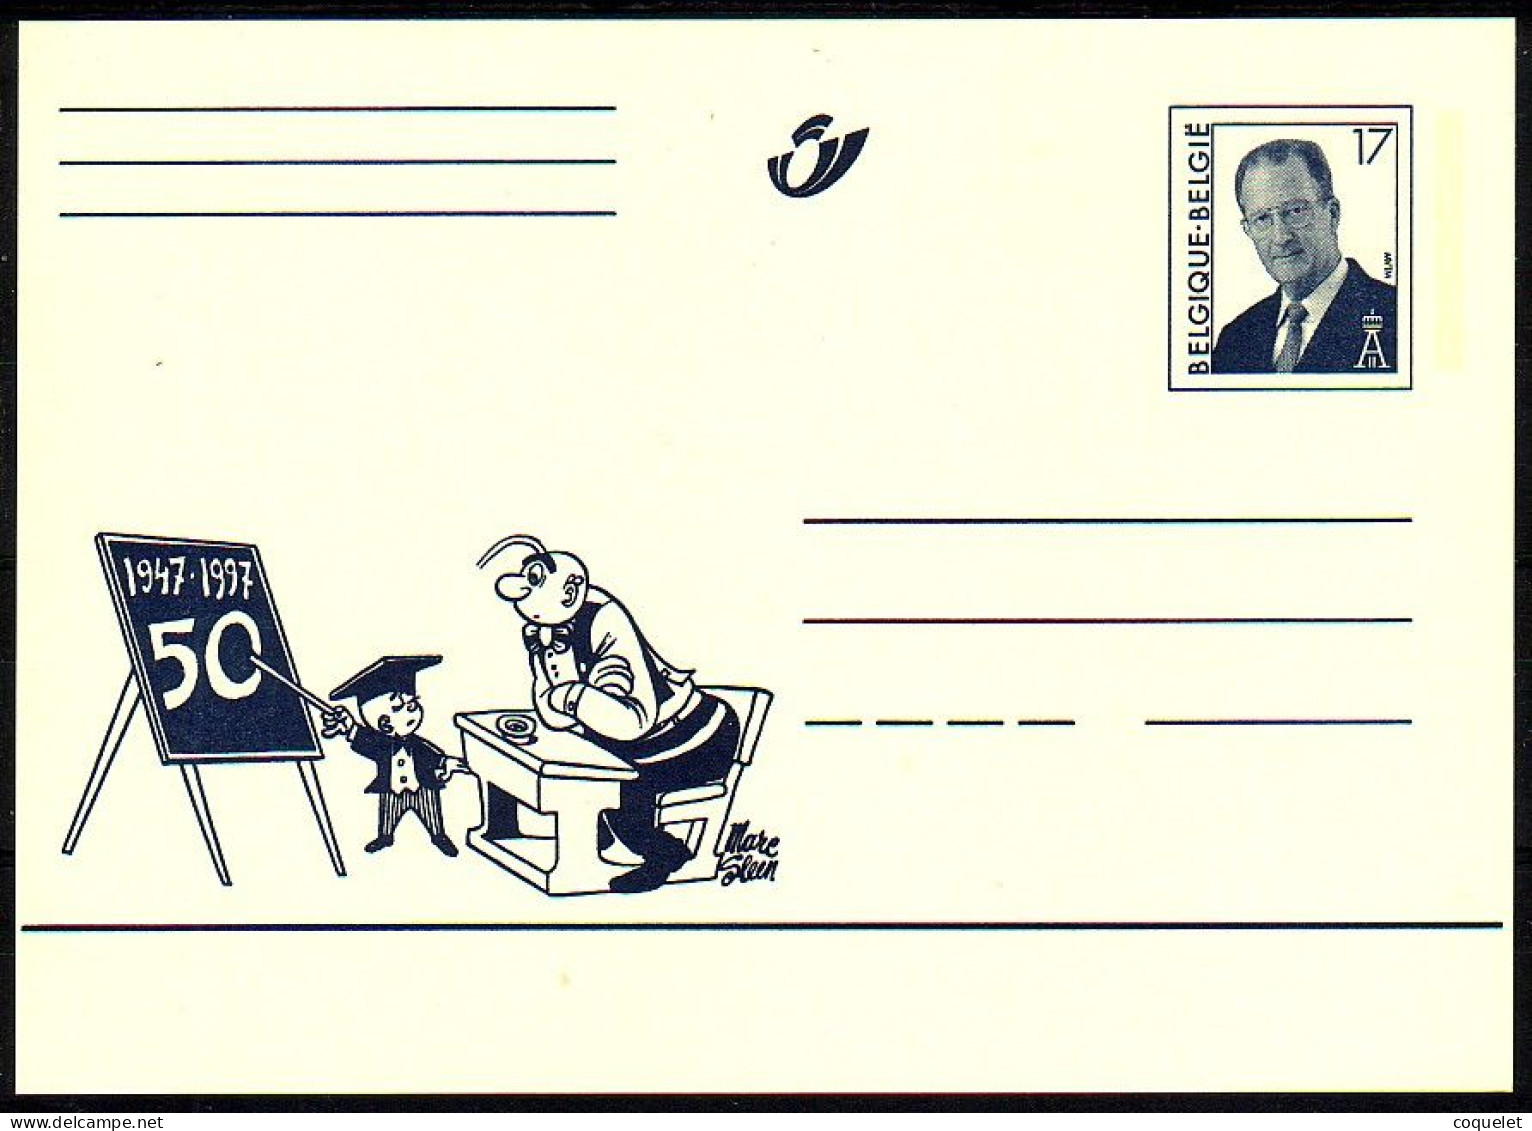 Belgique - Entiers Postaux - Cartes Illustrées N° 64 # NERON à L'école # Son Cinquantenaire 1947-1997 - Cómics